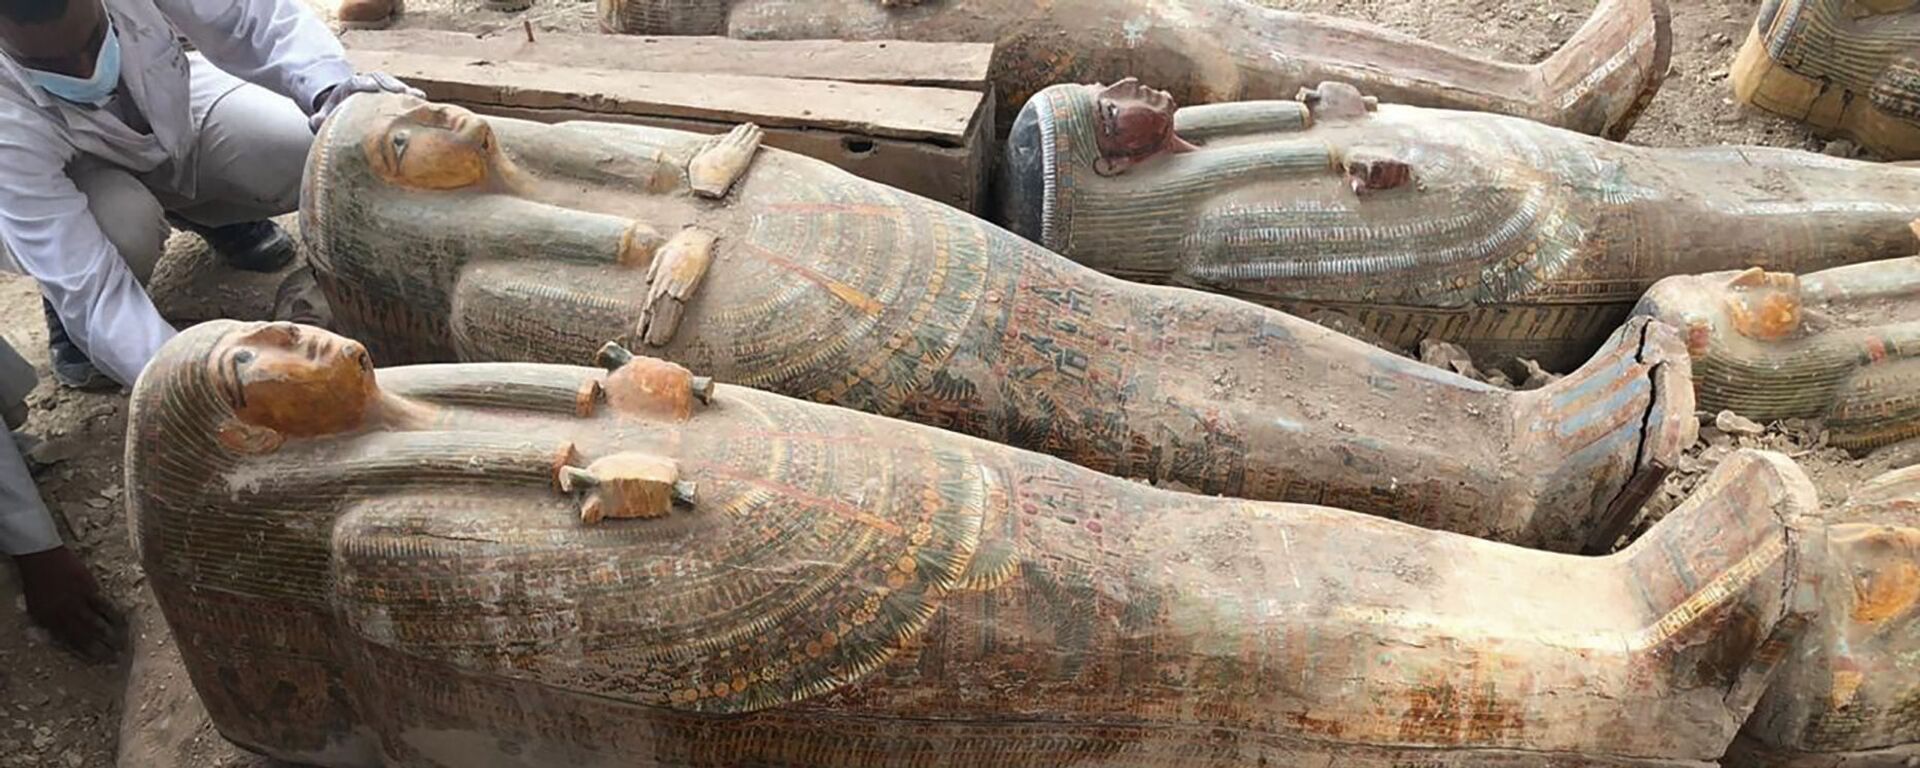 Древни ковчези у боји са натписима и цртежима у египатском граду Луксору - Sputnik Србија, 1920, 01.02.2021